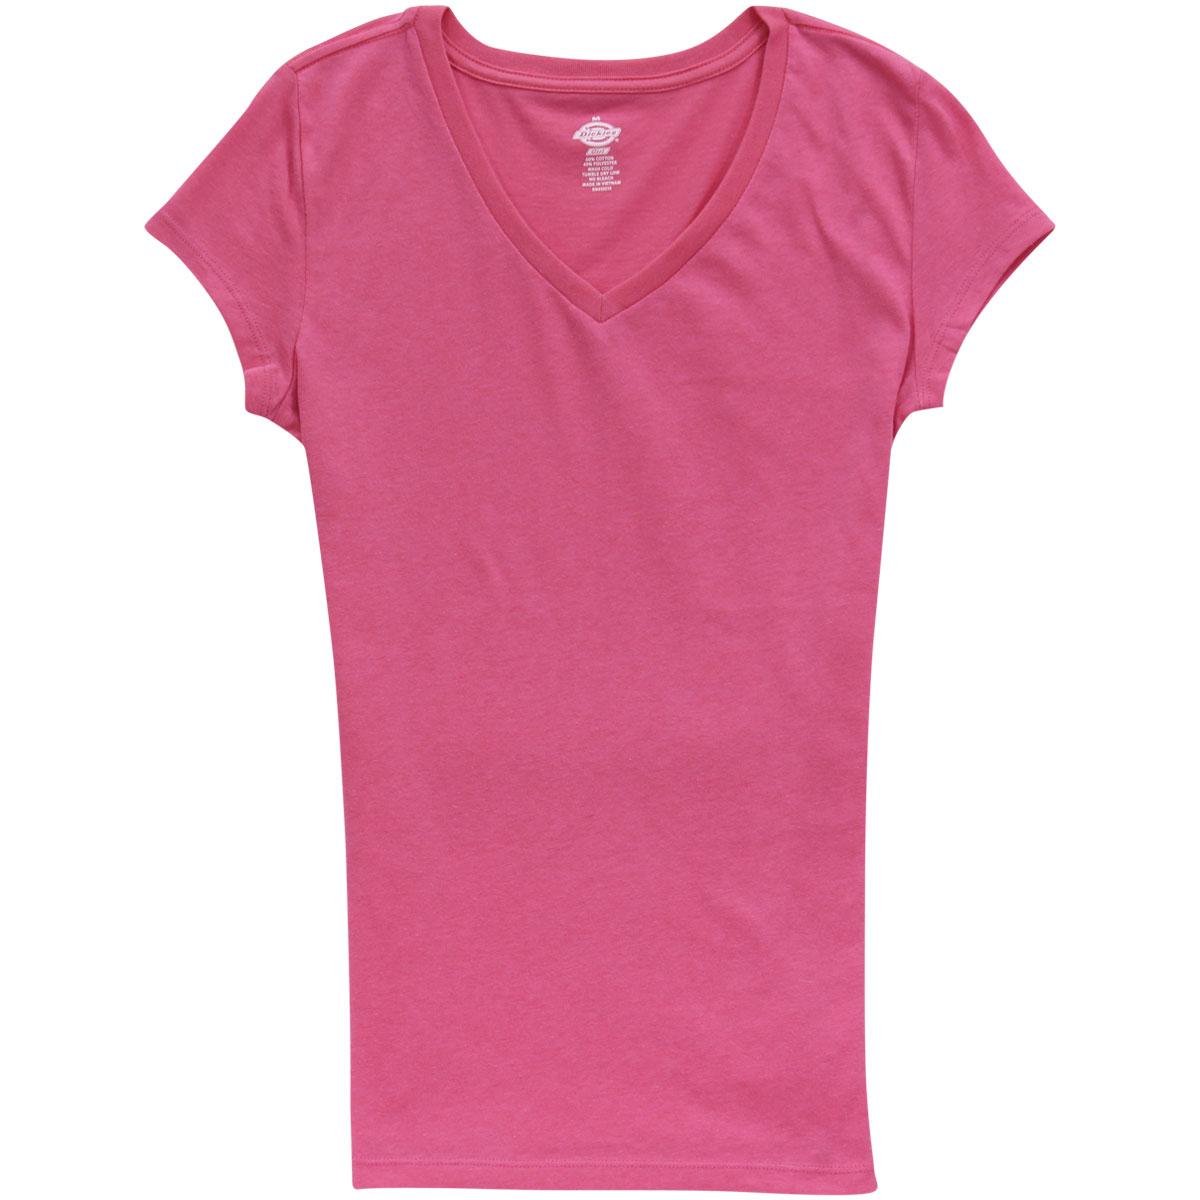 Dickies Girl Junior's Slim Fit Short Sleeve V Neck T Shirt - Lipstick Pink - Medium